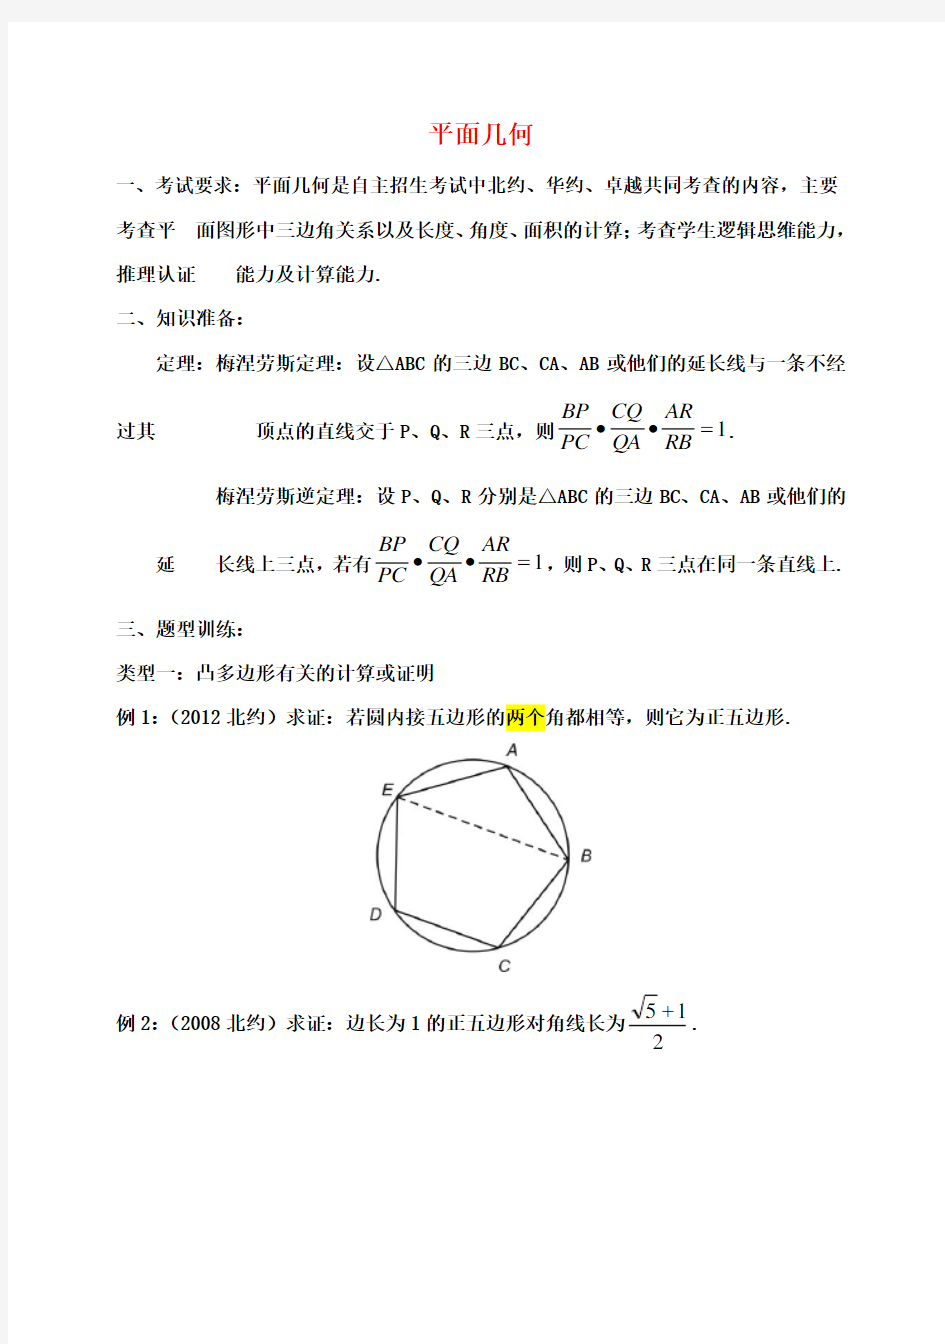 清华大学附中高考数学复习讲义 平面几何(无答案)